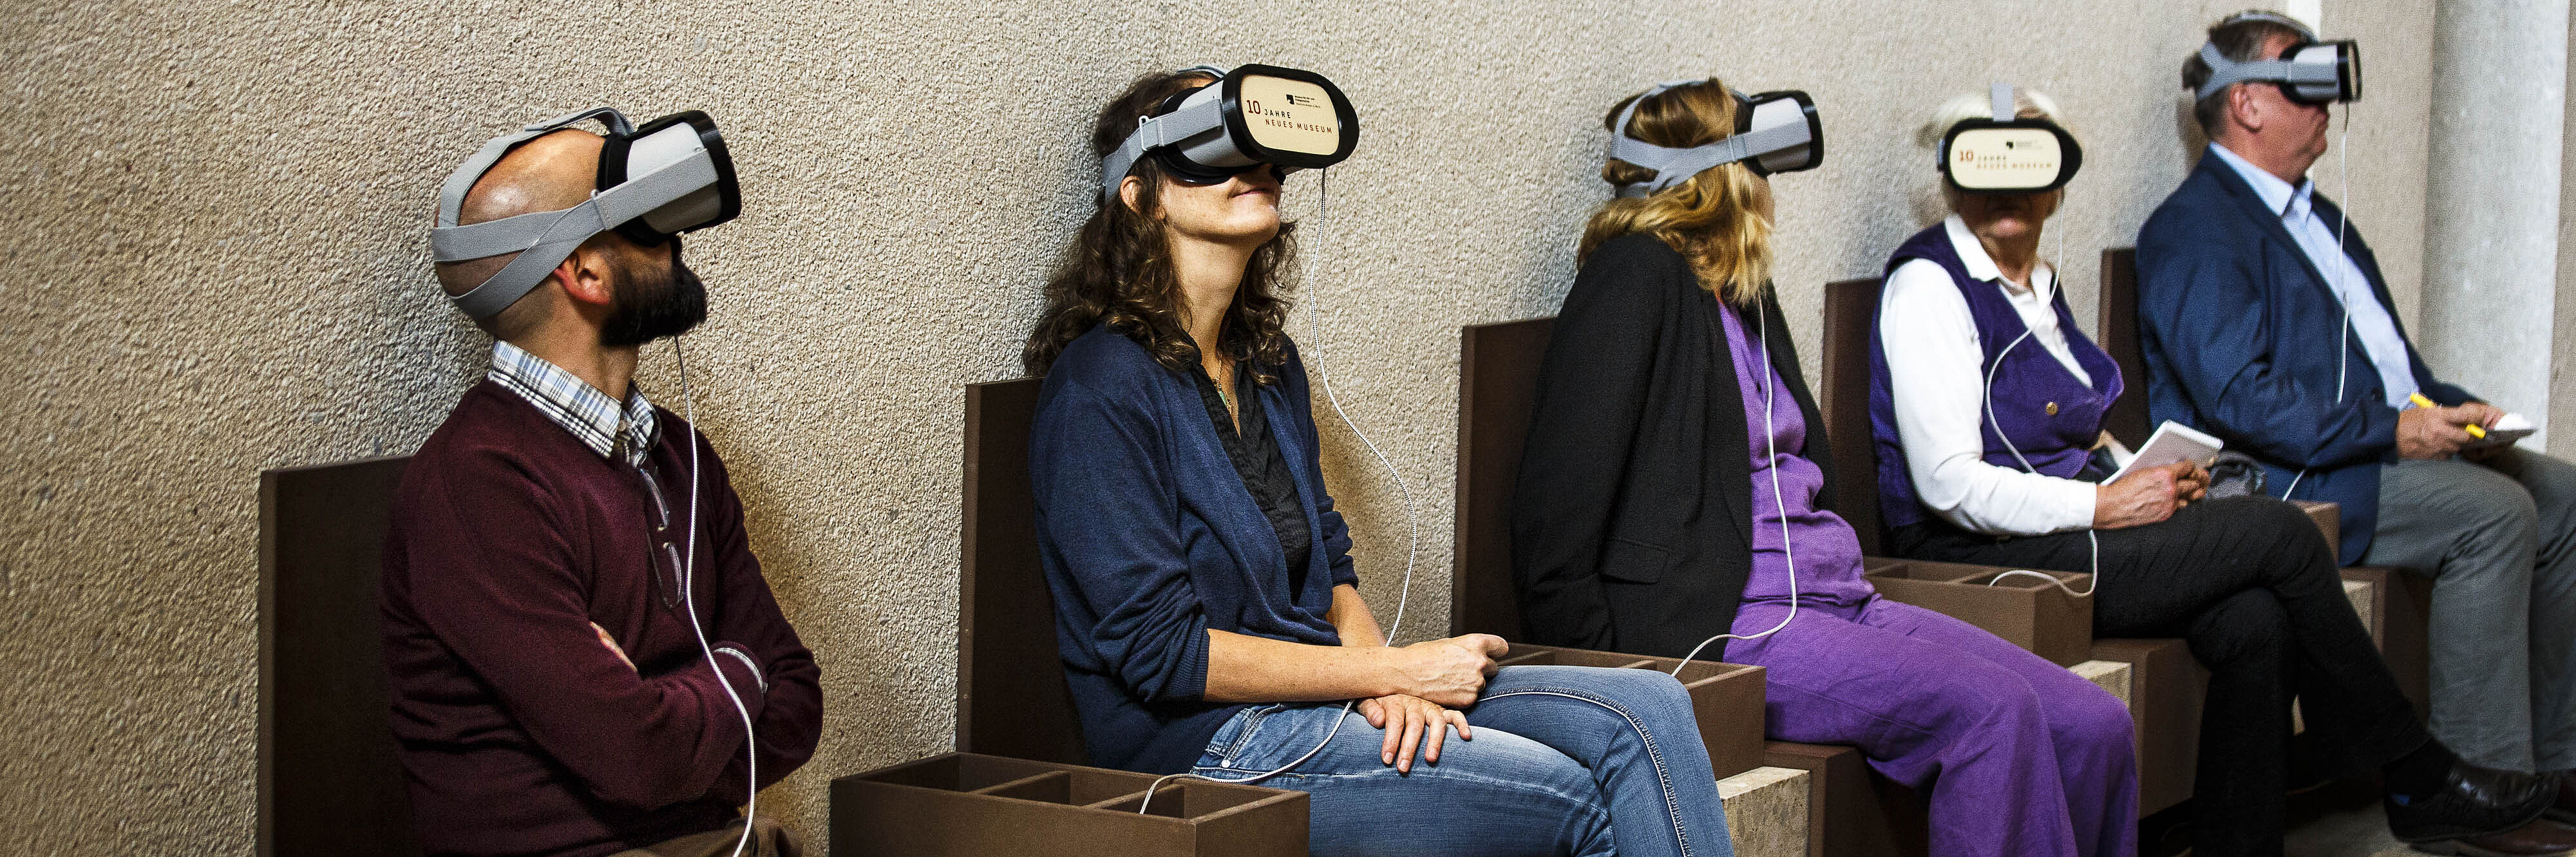 Fünf Personen unterschiedlichen Geschlechts und Alters mit Virtual-Reality-Headsets sitzen nebeneinander auf einer Bank in einem Raum